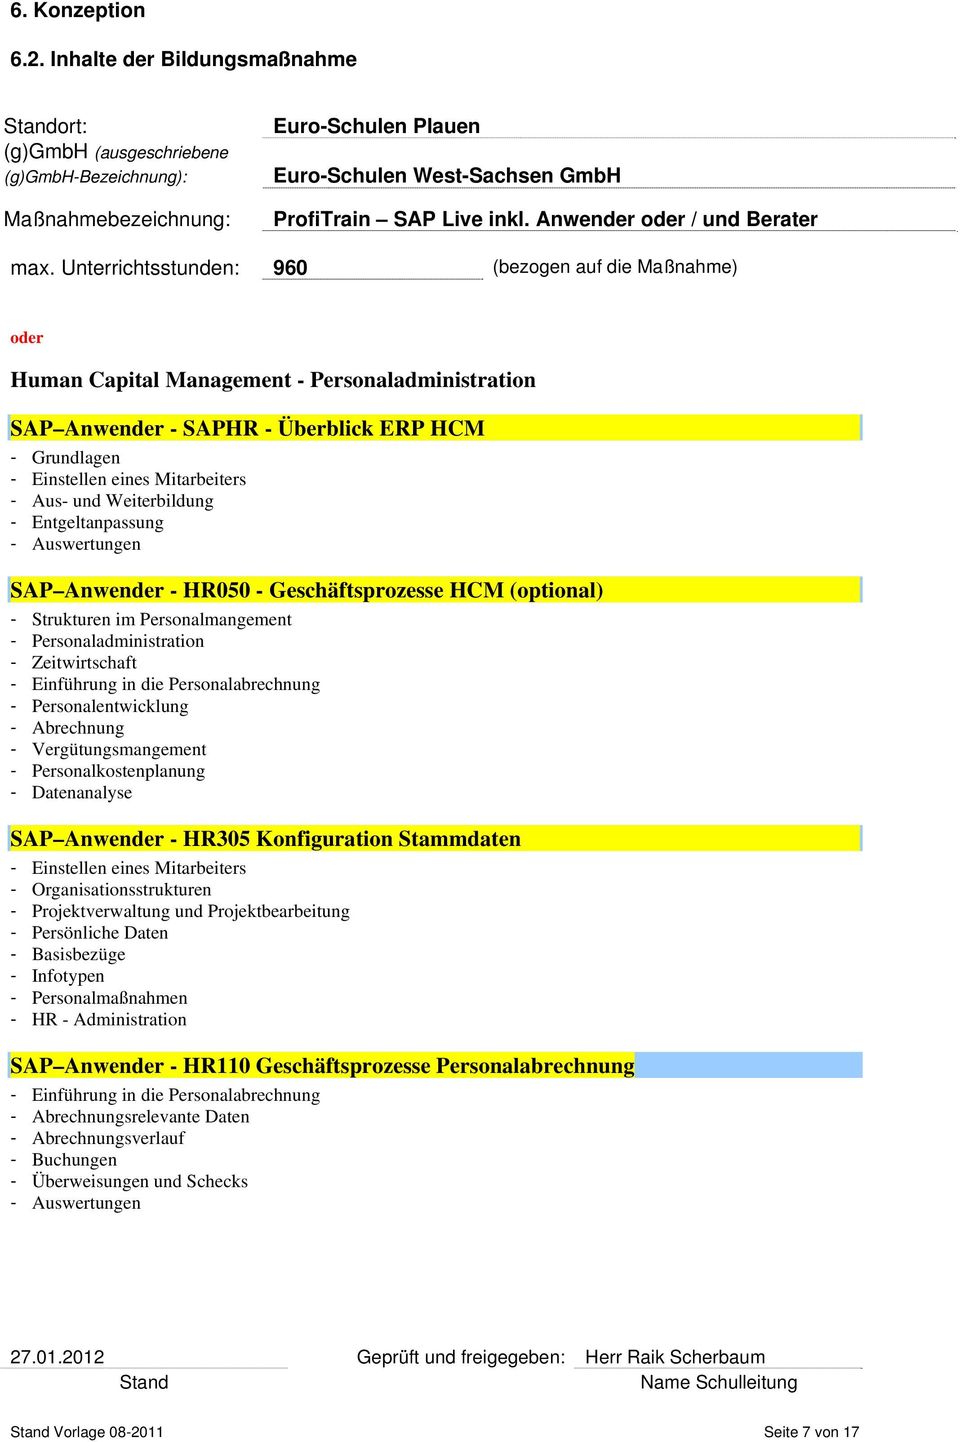 Entgeltanpassung SAP Anwender - HR050 - Geschäftsprozesse HCM (optional) - Strukturen im Personalmangement - Personaladministration - Zeitwirtschaft - Einführung in die Personalabrechnung -